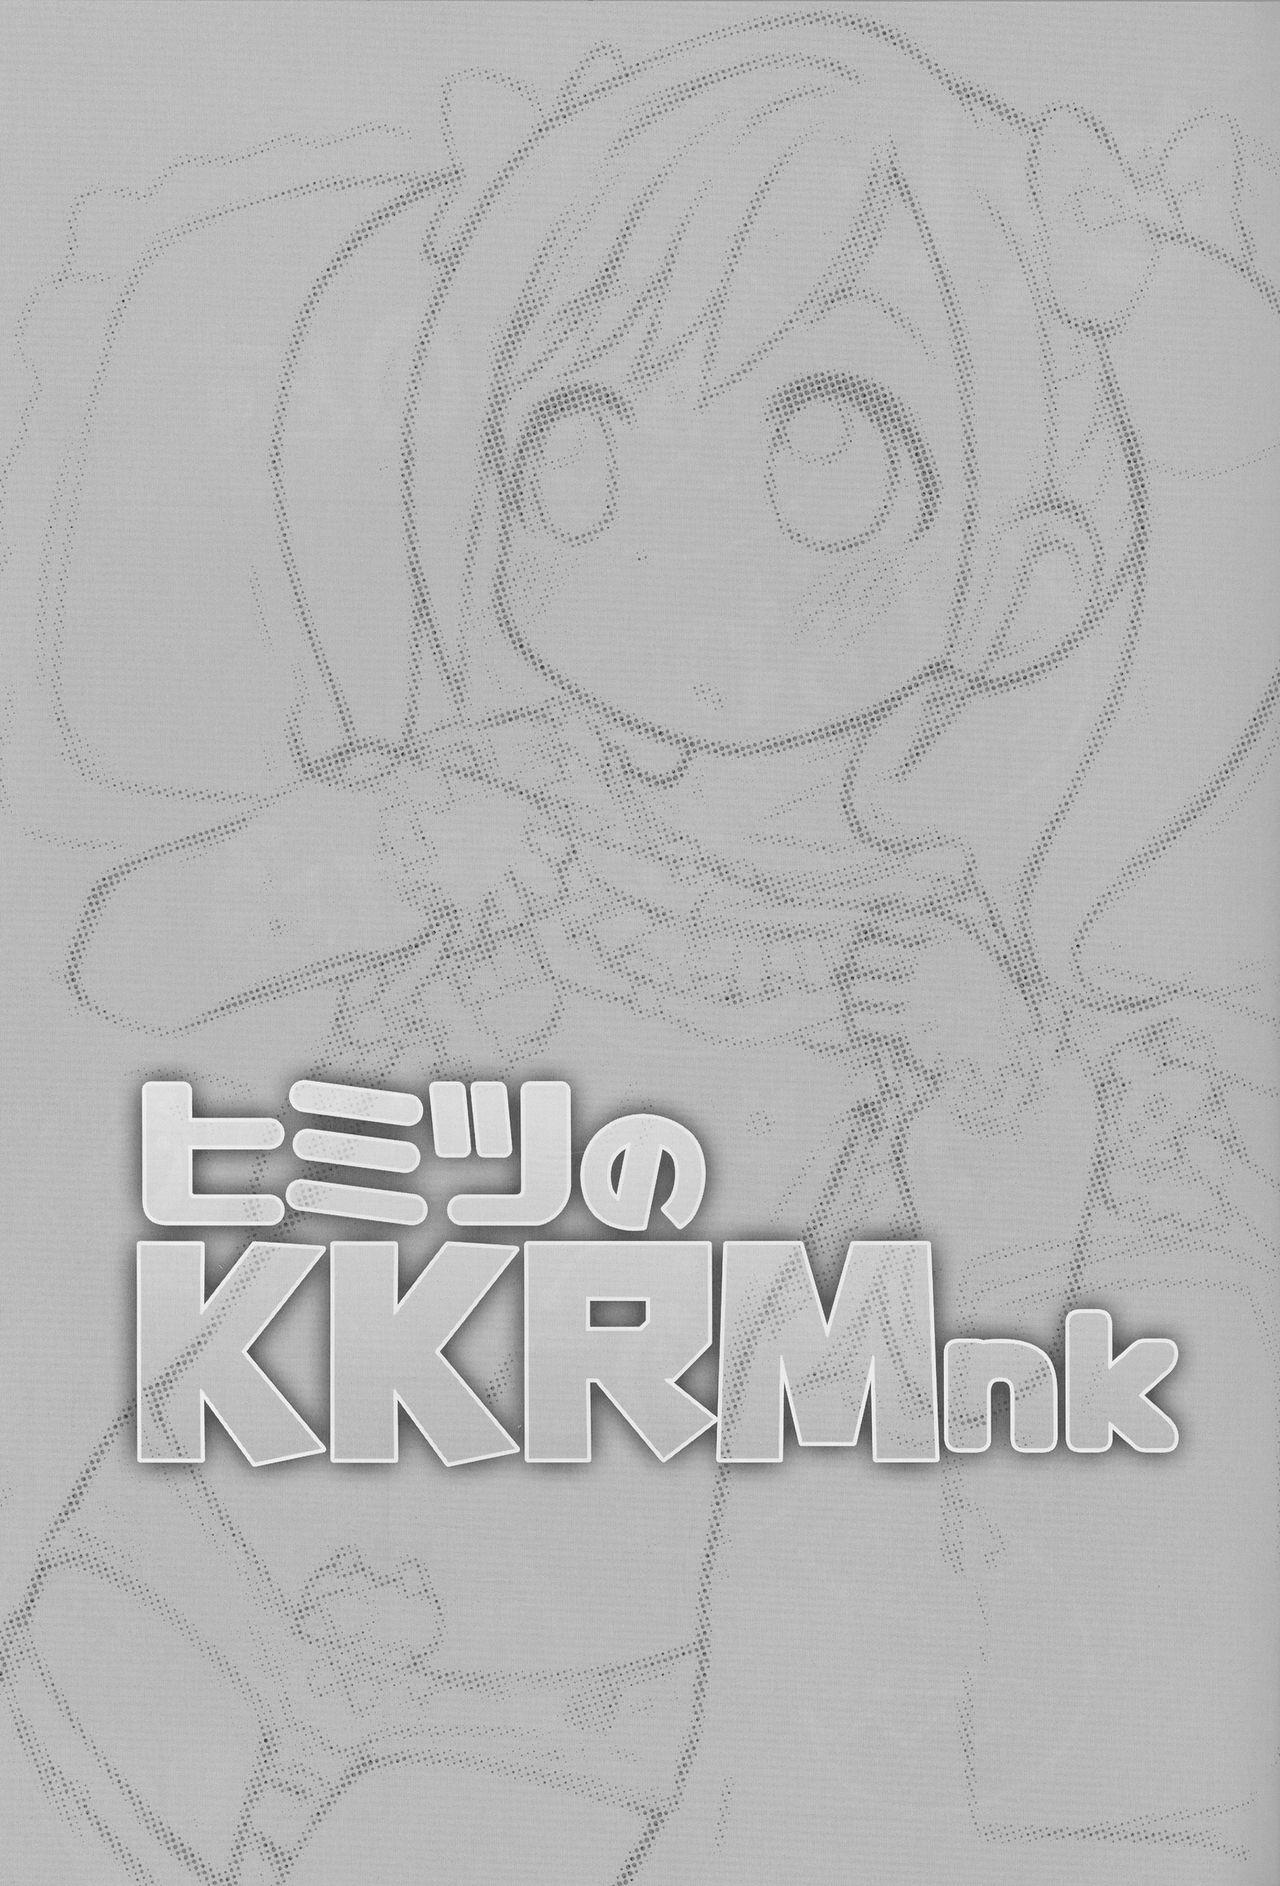 Himitsu no KKRMnk 2